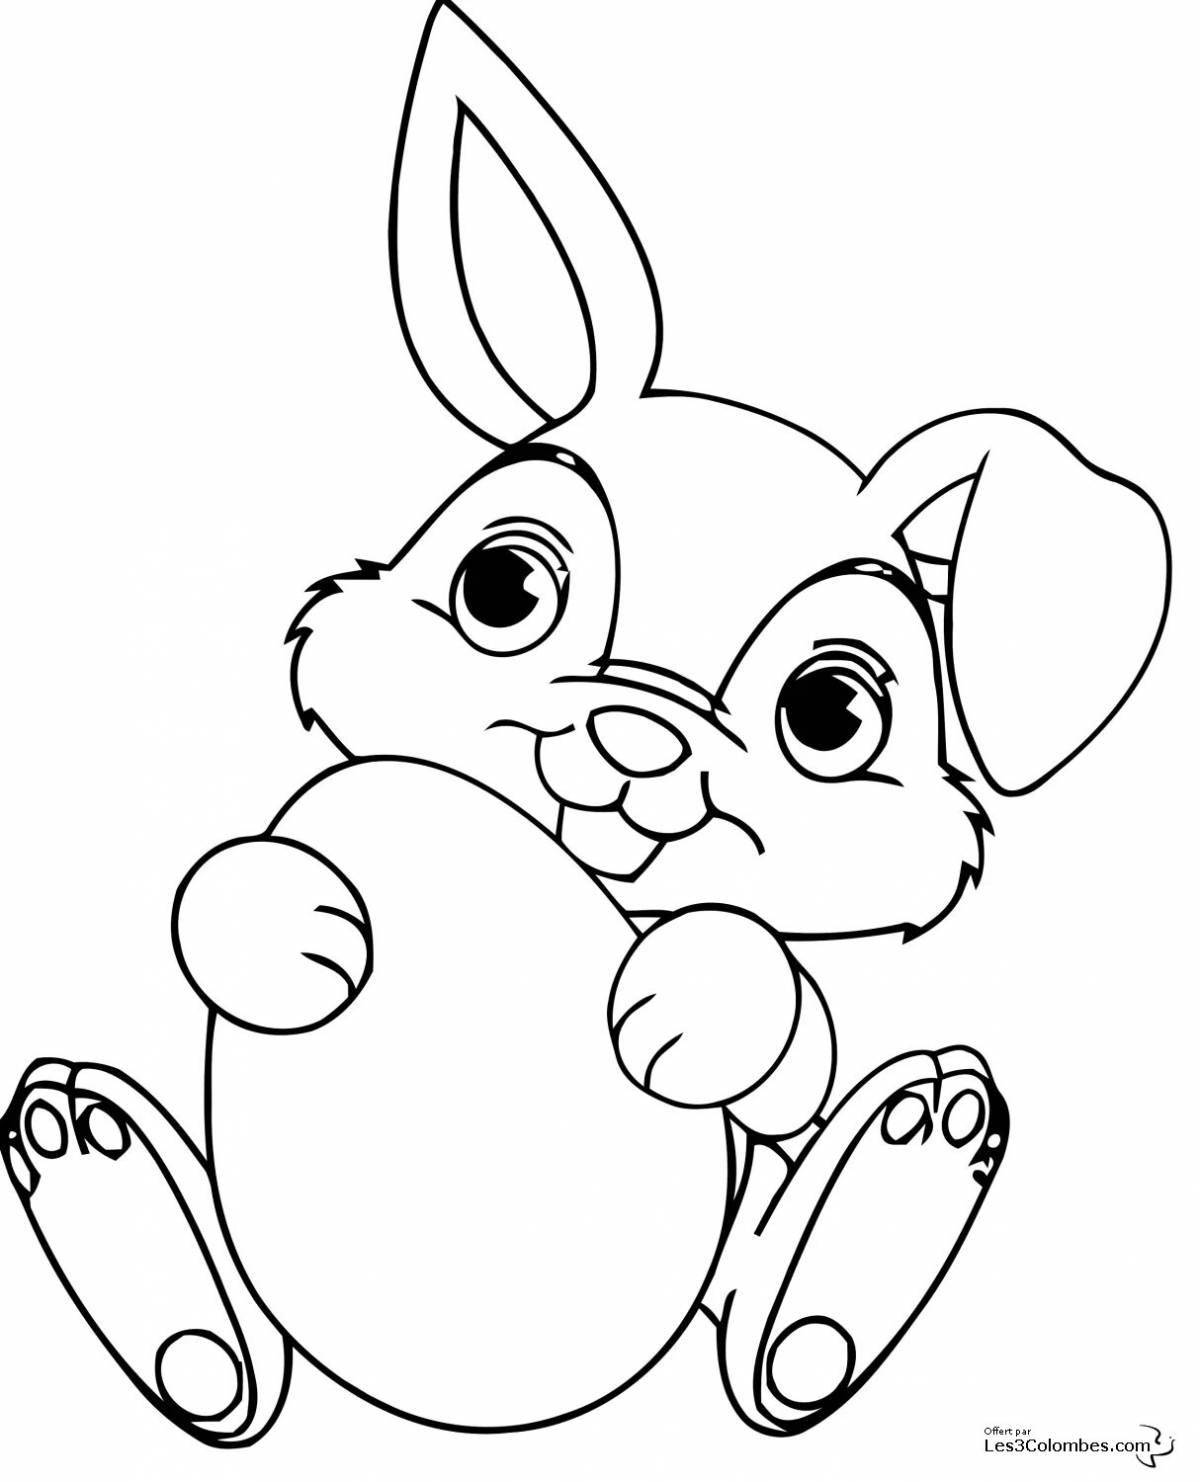 Причудливая раскраска кролик с бантиком